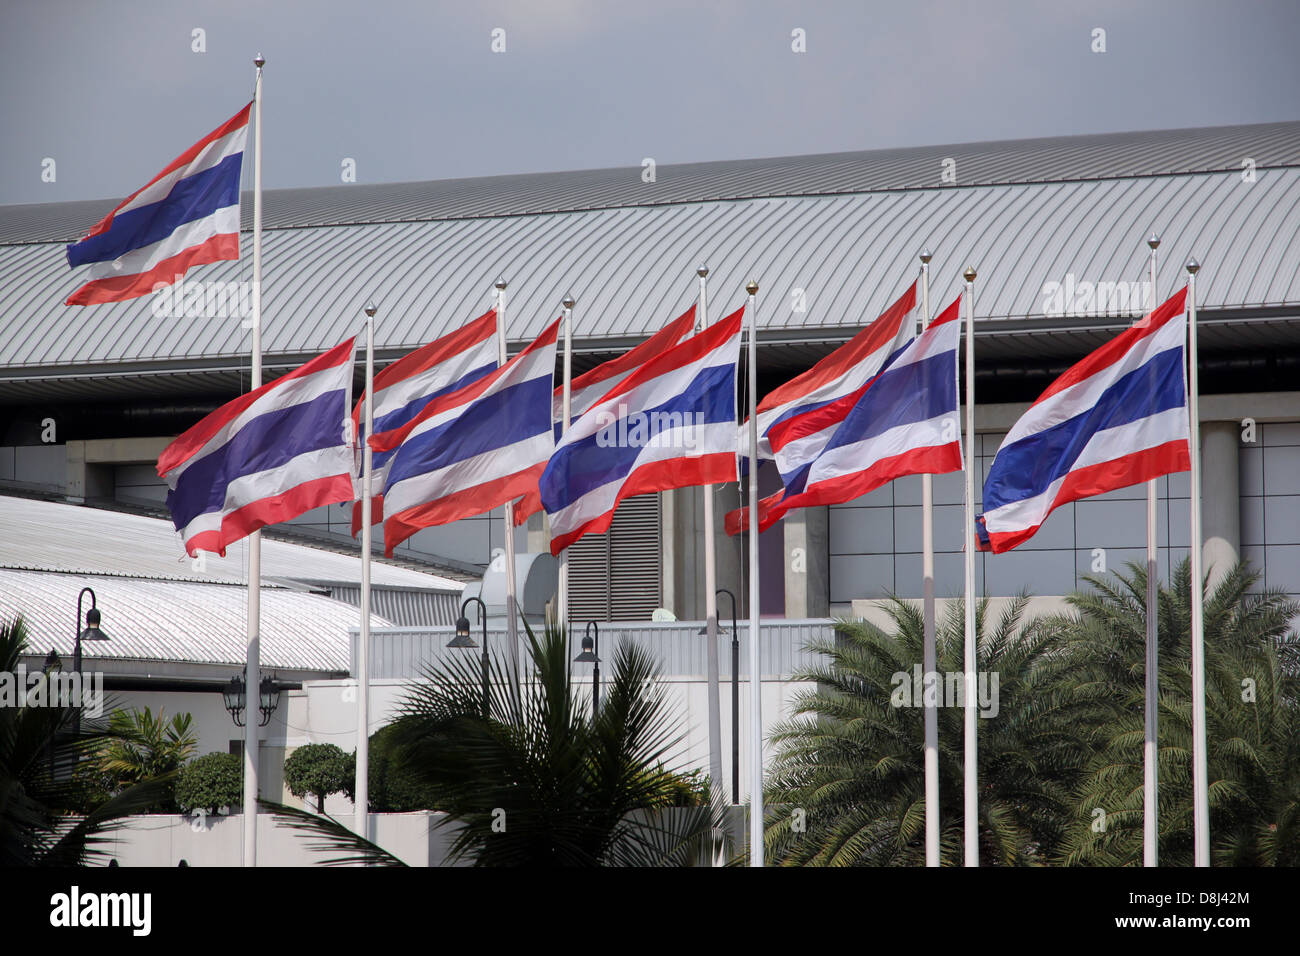 Die Flagge von Thailand getroffen durch starken Wind. Gehören die Flagge ist rot-weiß-blauen Farben. Stockfoto